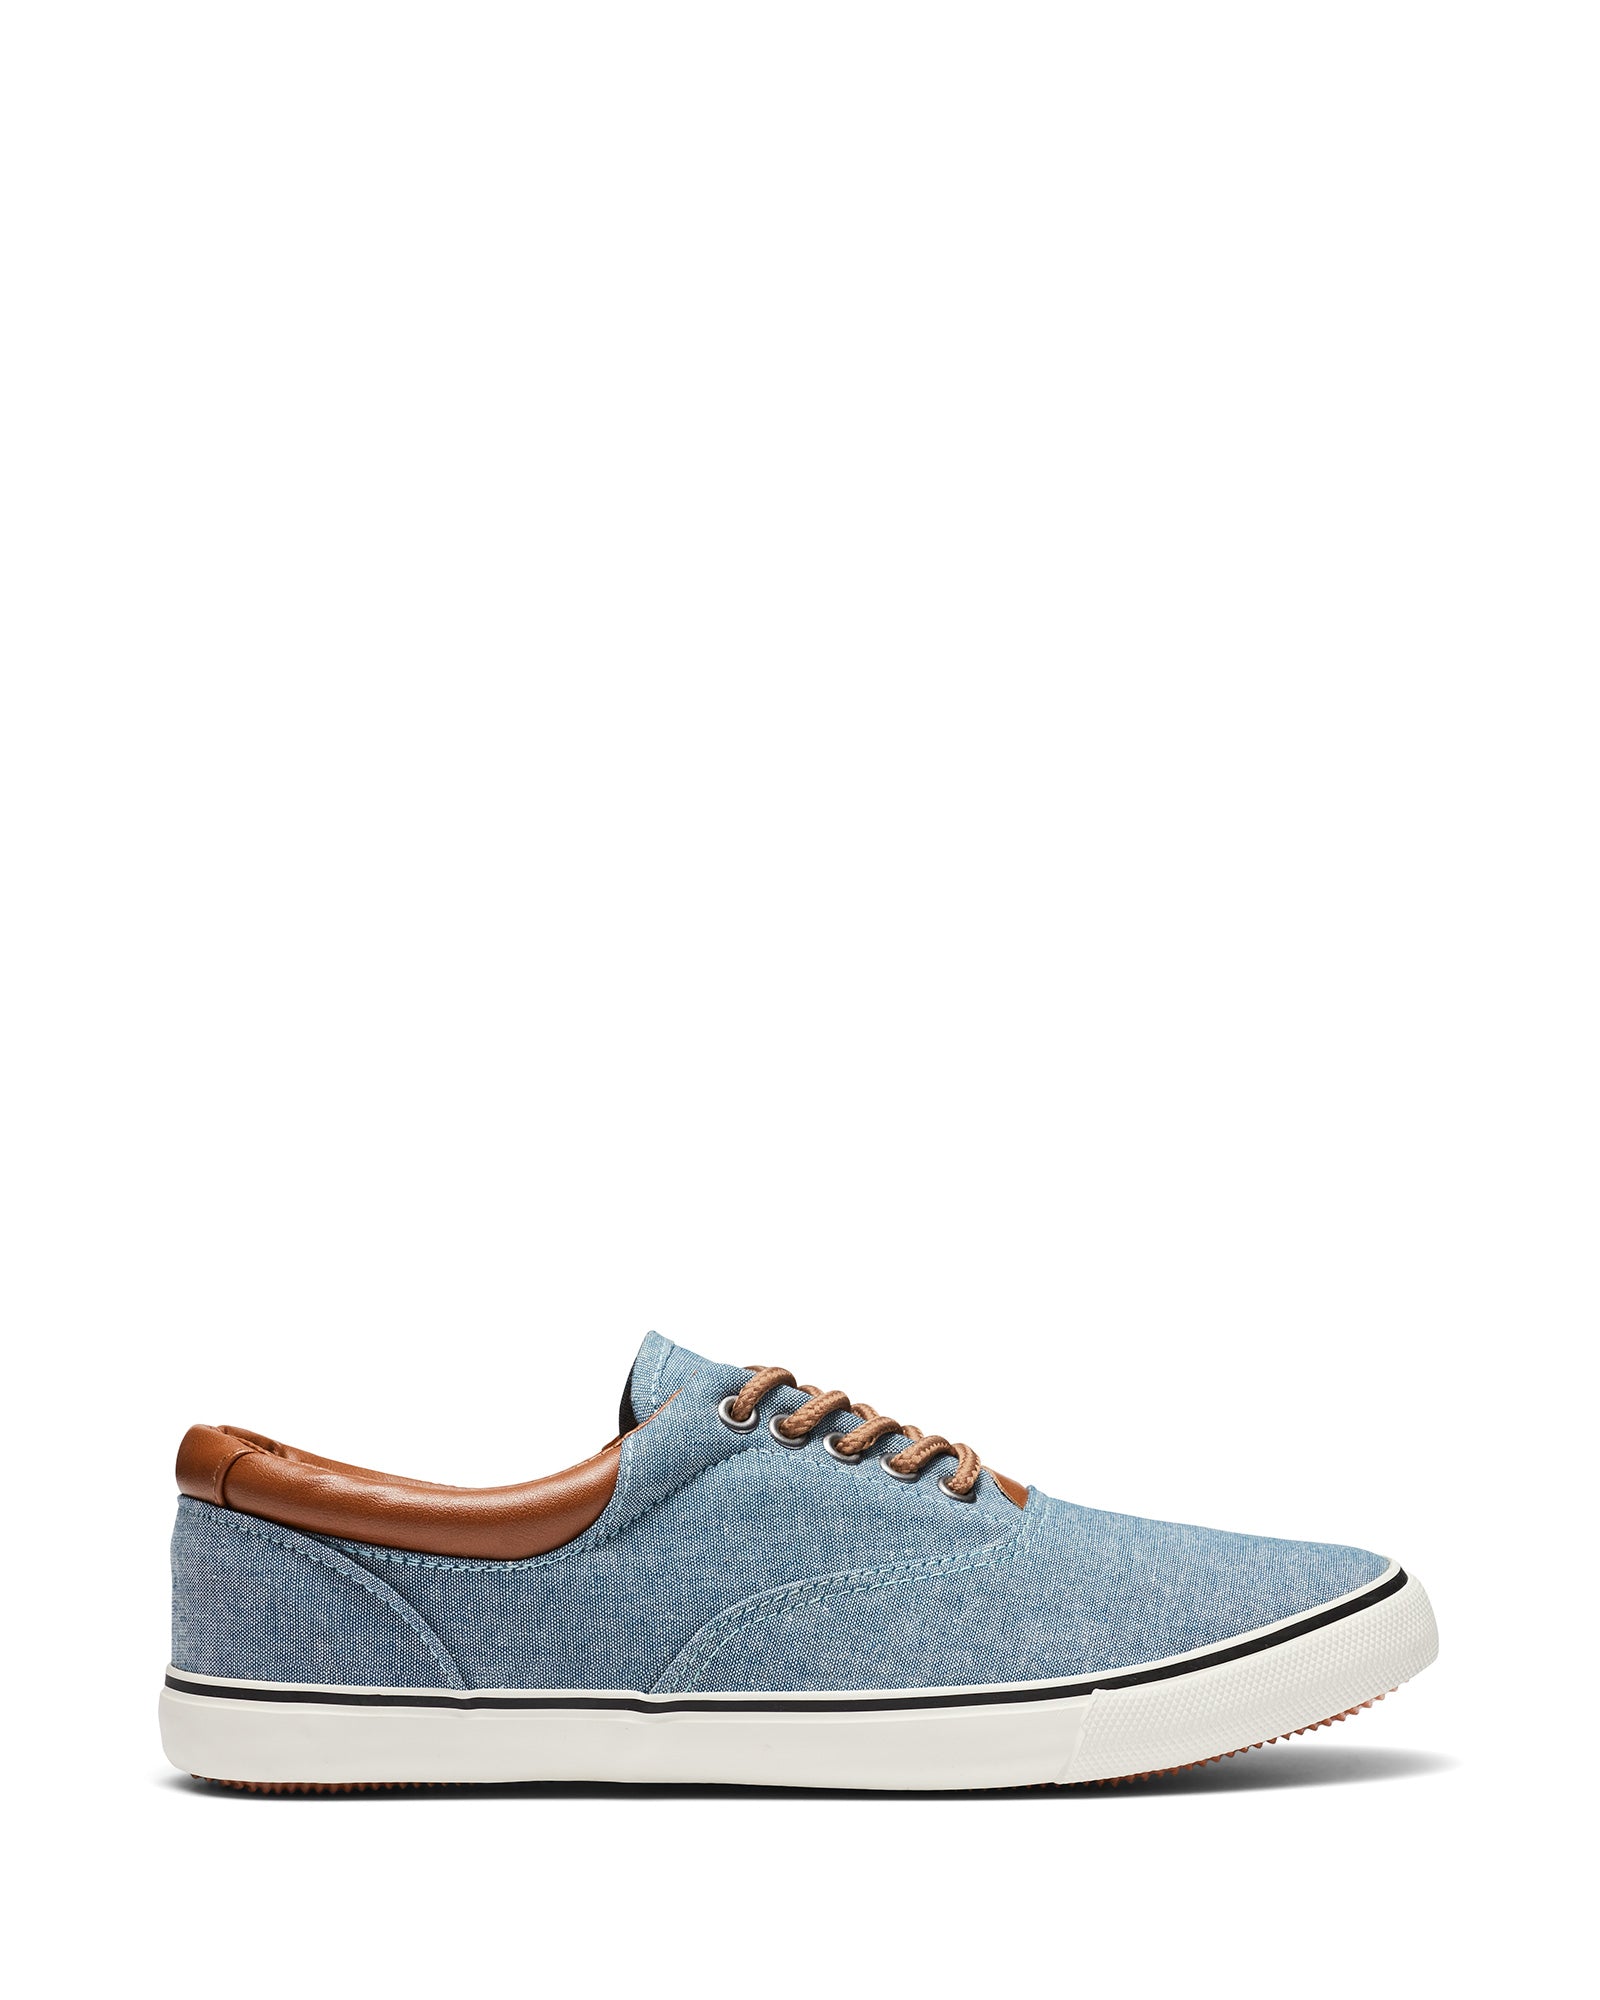 Uncut Shoes Lance Blue Denim | Men's Sneaker | Low Top | Lace Up | Casual